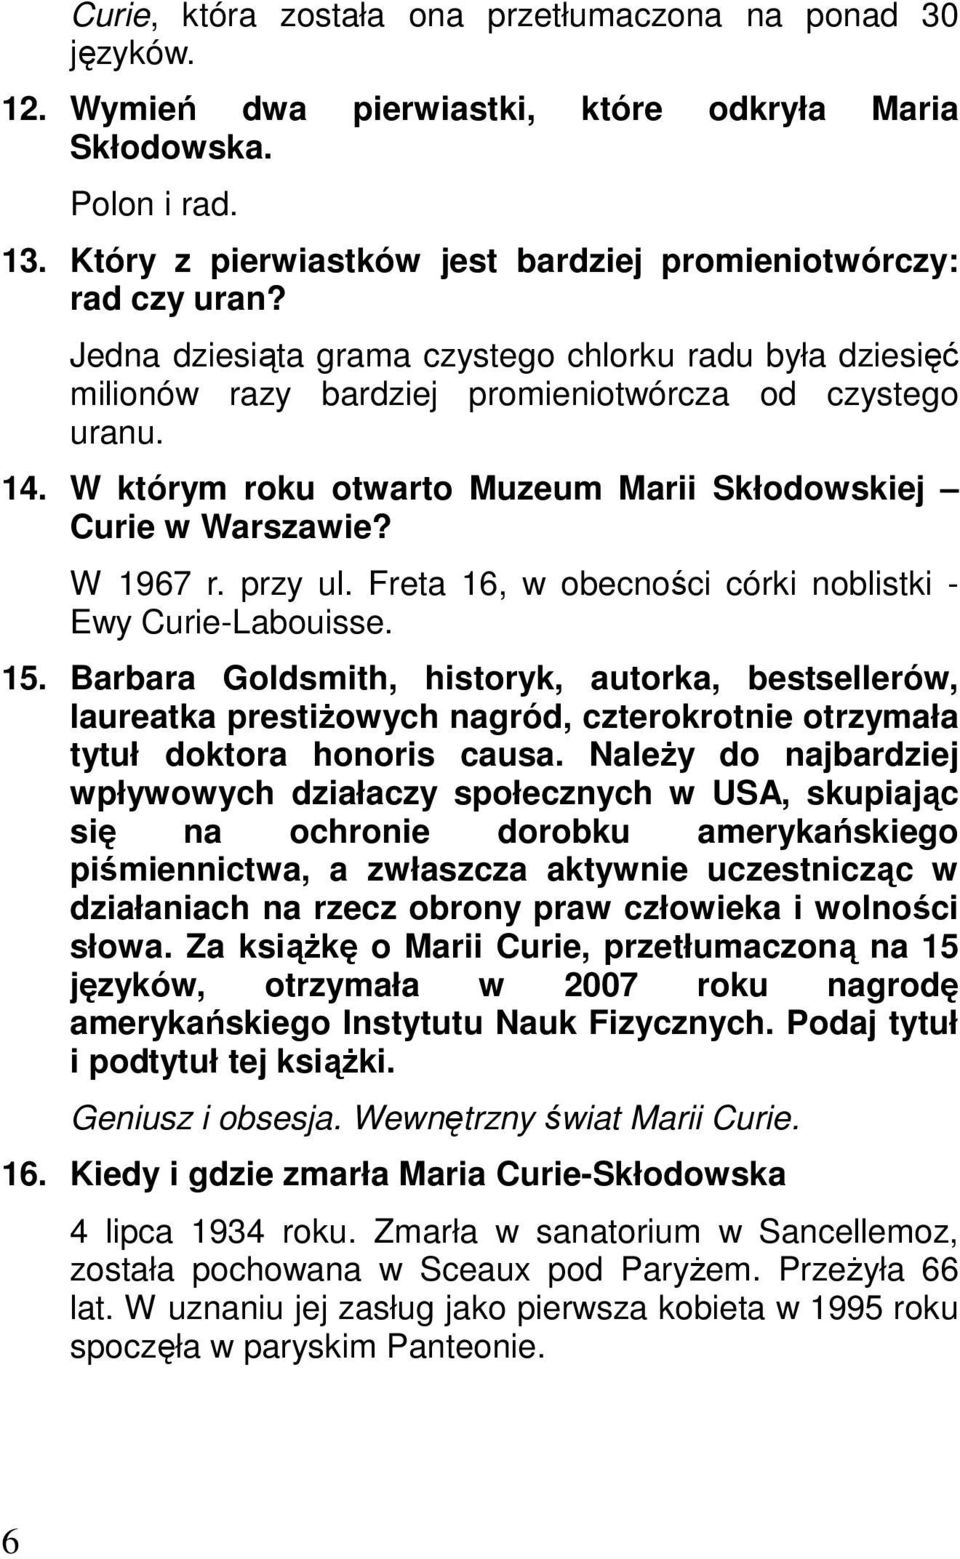 W którym roku otwarto Muzeum Marii Skłodowskiej Curie w Warszawie? W 1967 r. przy ul. Freta 16, w obecności córki noblistki - Ewy Curie-Labouisse. 15.